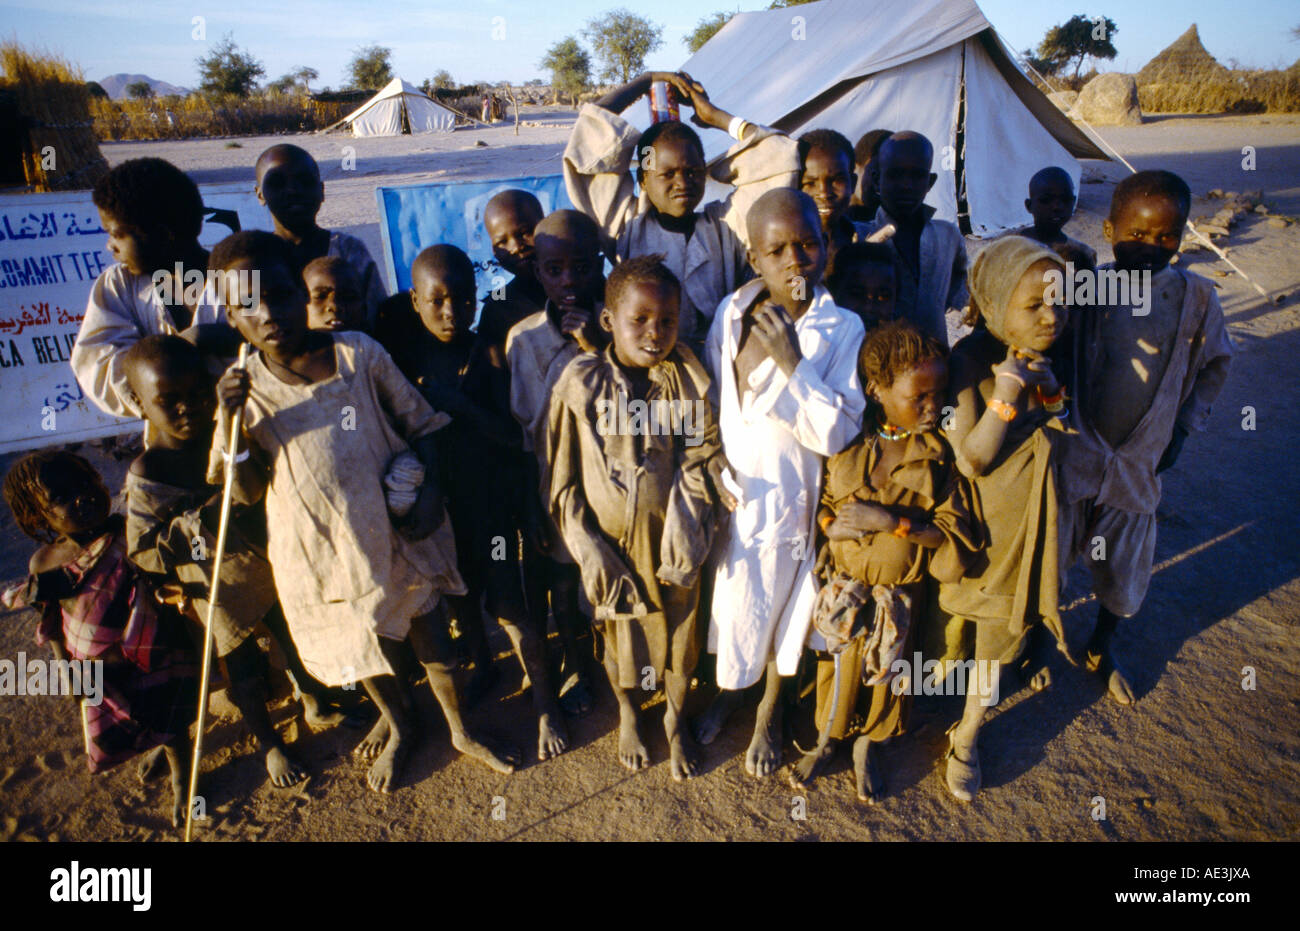 Tandelti Camp Sudan Child Refugees Starving Children Stock Photo